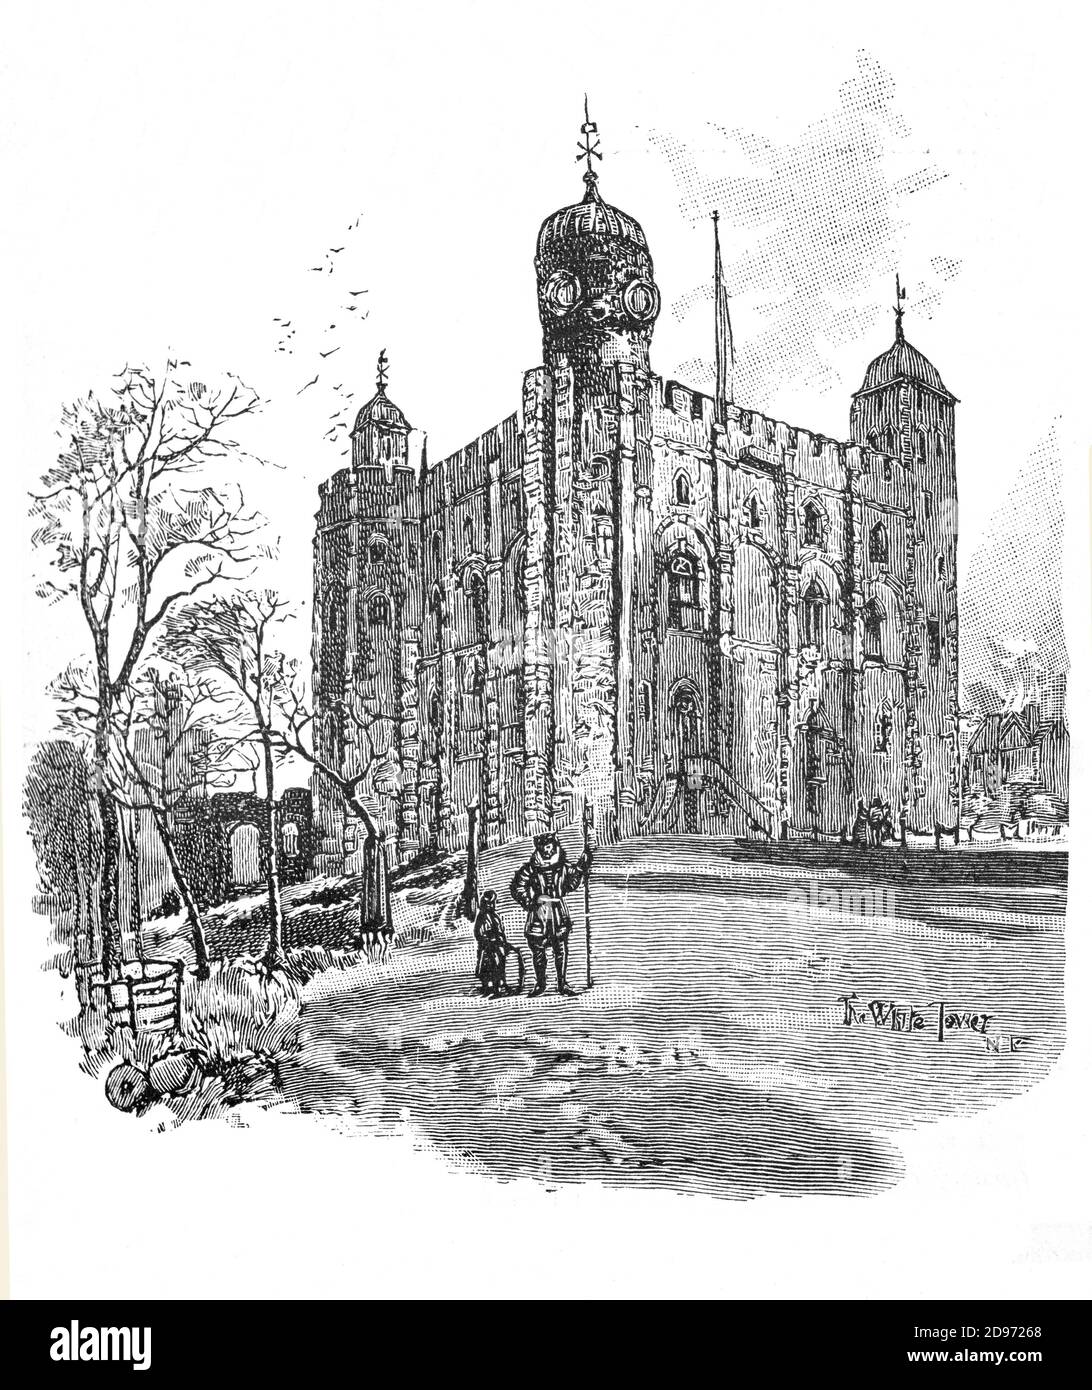 Der White Tower ist ein zentraler Turm, der alte Turm, am Tower of London. Es wurde von William dem Eroberer in den frühen 1080er Jahren gebaut und später erweitert. Der Weiße Turm war militärisch der stärkste Punkt der Burg und bot Unterkunft für den König und seine Vertreter sowie eine Kapelle. Henry III bestellt den Turm weiß getüncht im Jahr 1240. Stockfoto